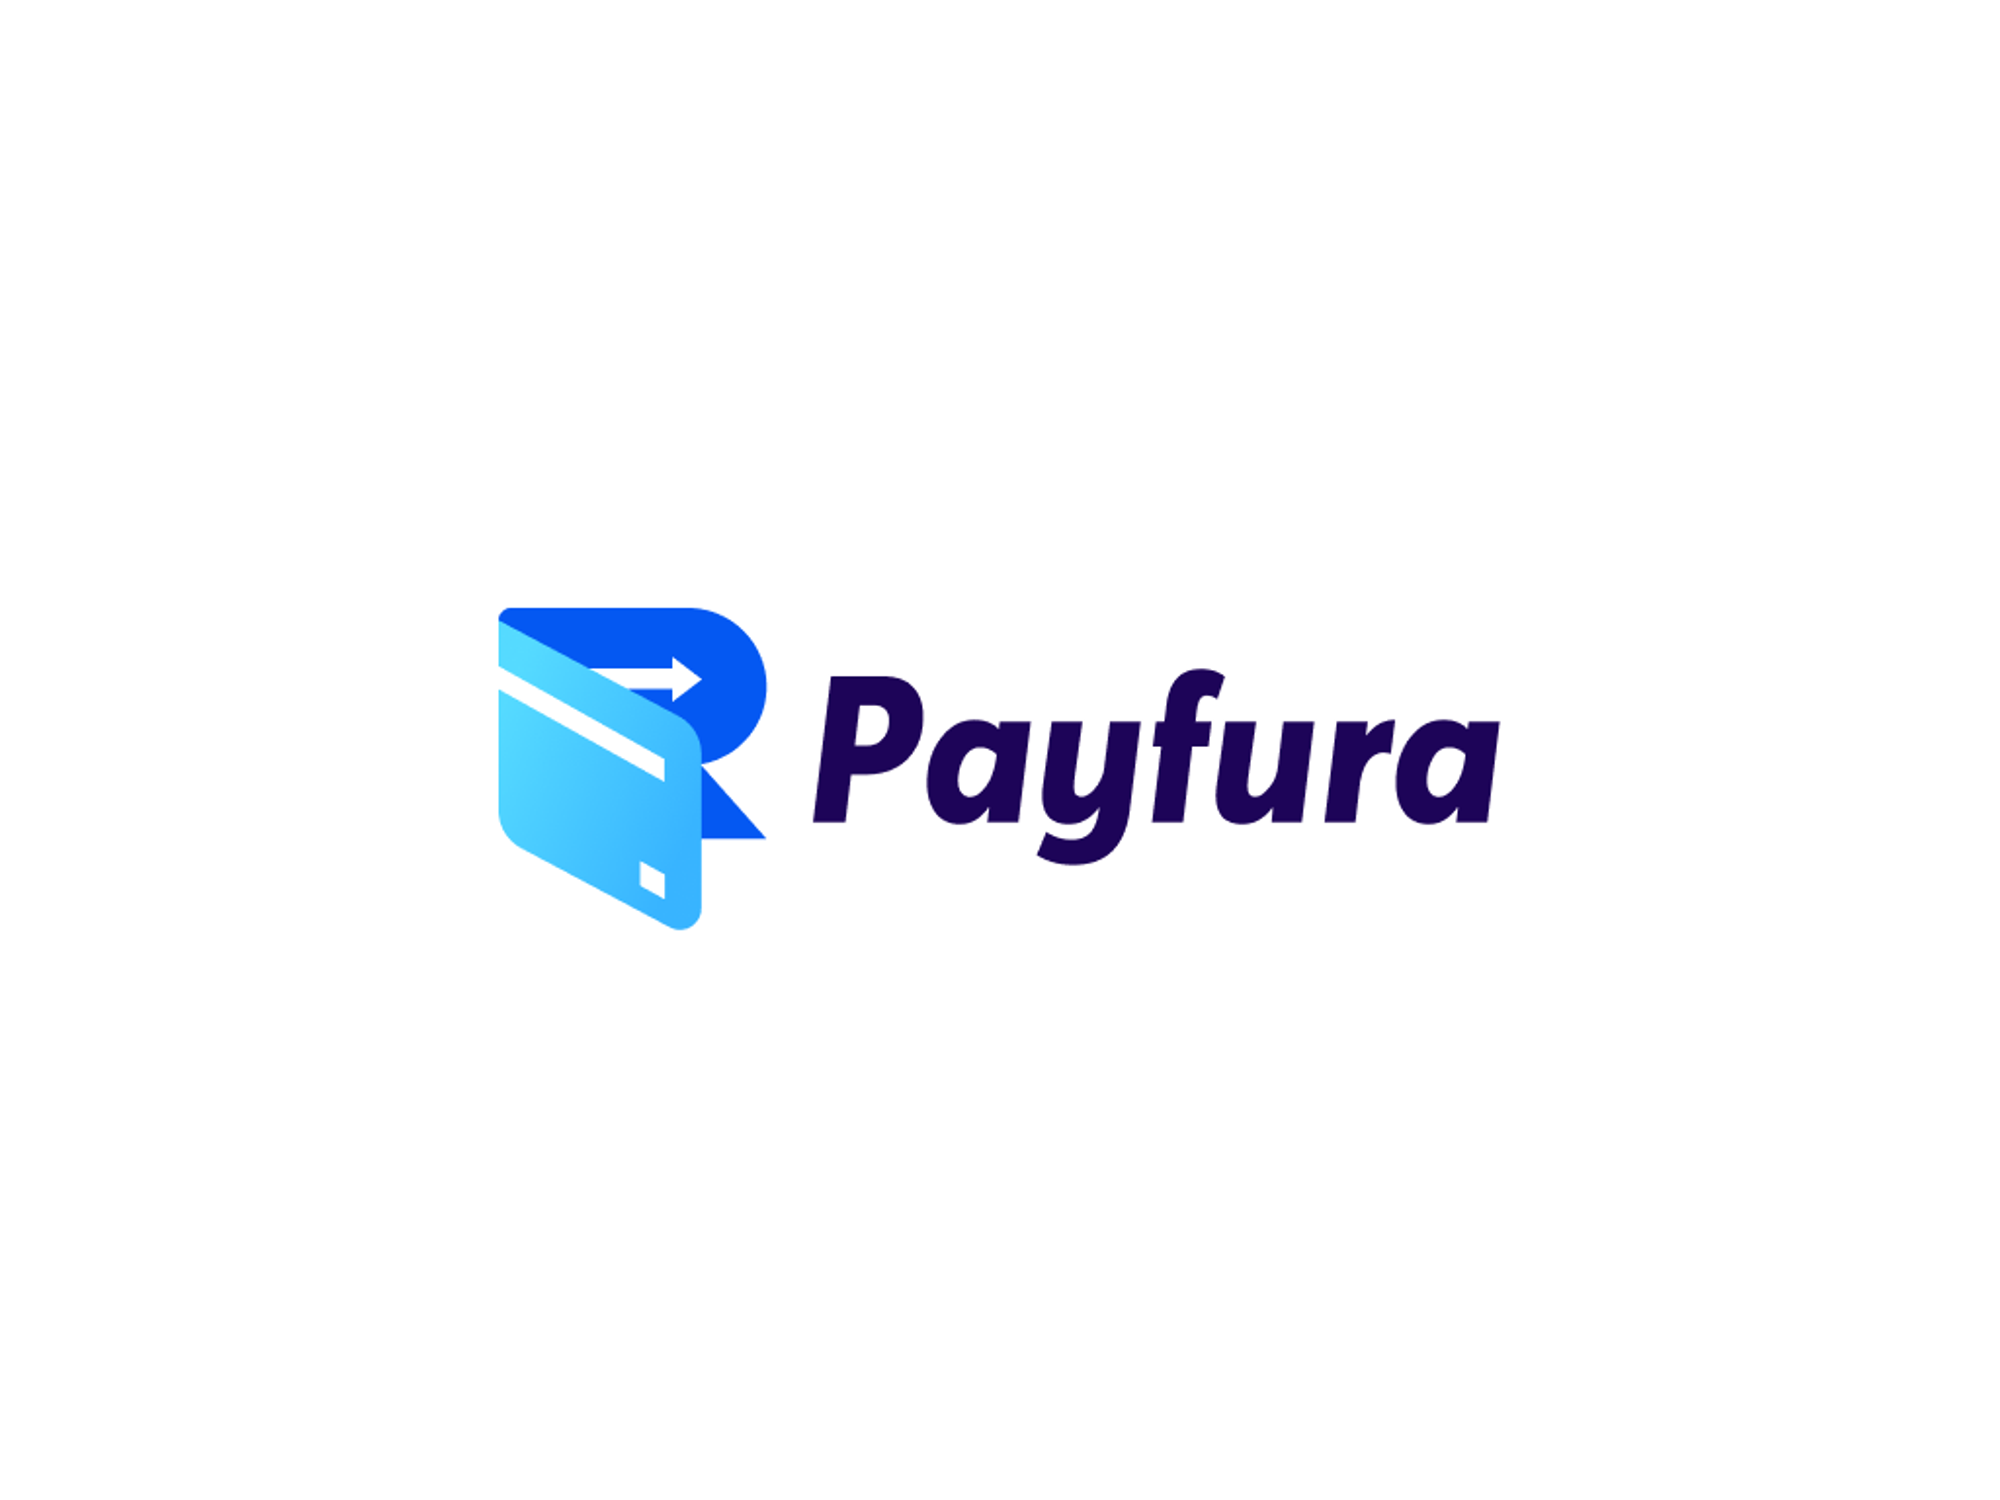 Payfura